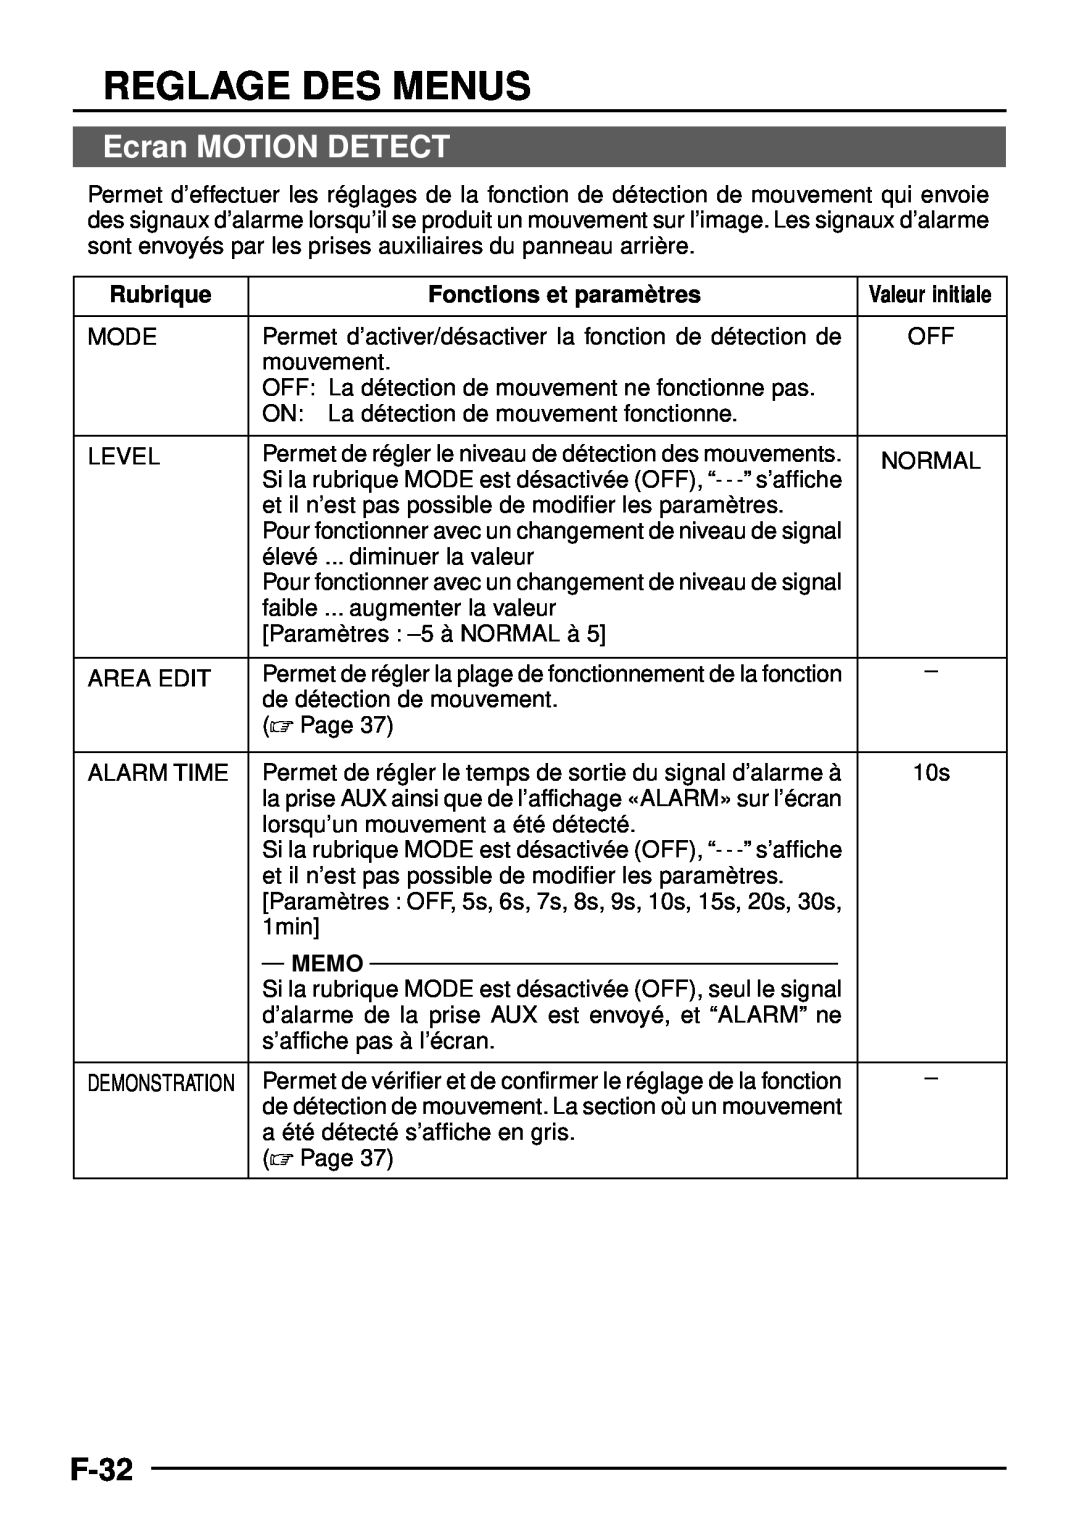 JVC TK-C1460 manual Ecran MOTION DETECT, F-32, Reglage Des Menus, Rubrique, Fonctions et paramè tres, Memo 